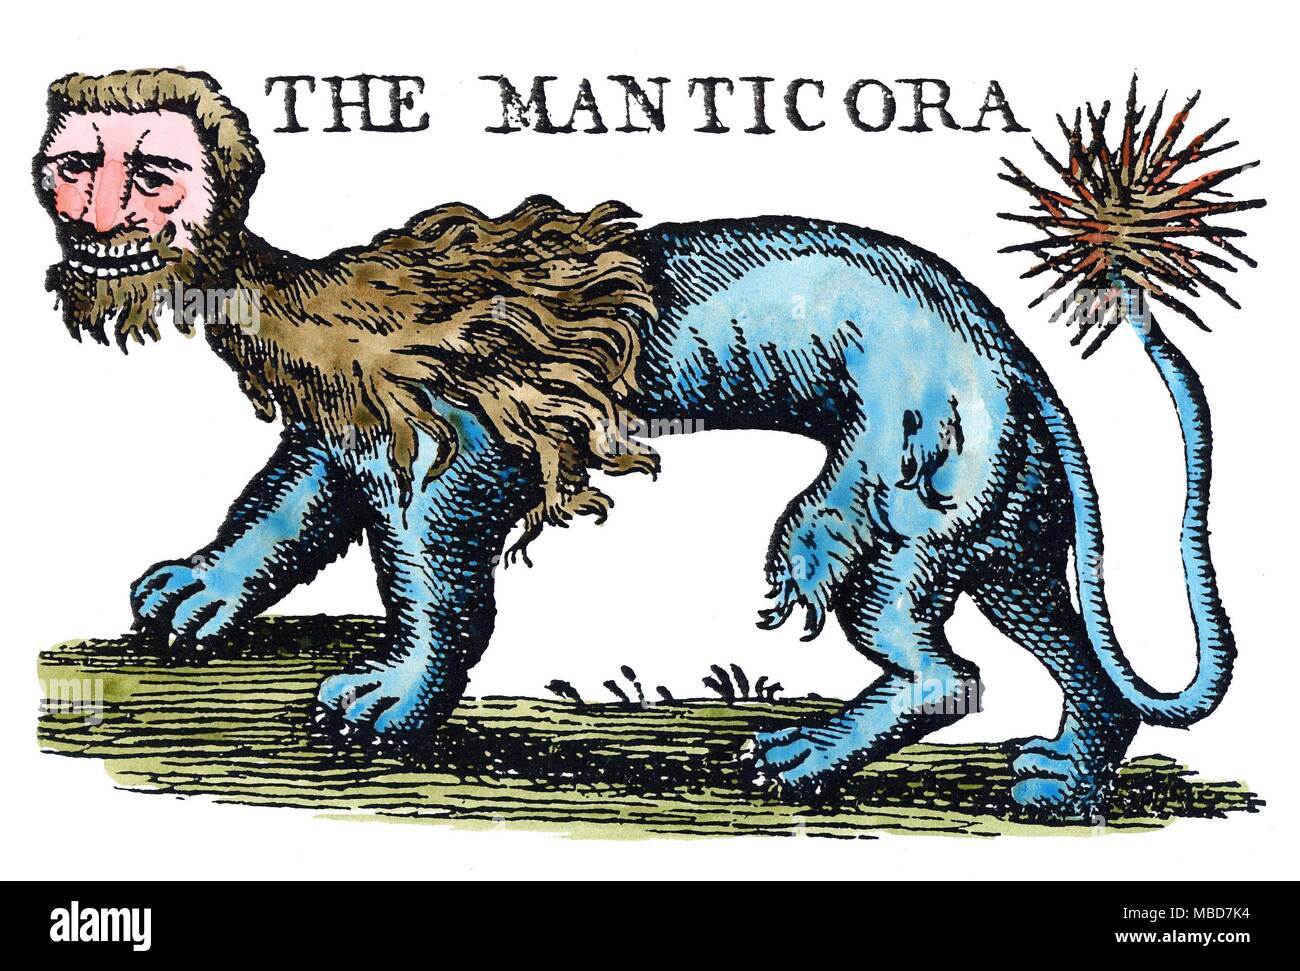 Mostri - MANTICORA l'uomo-guidato, lion corposo, spike-tailed Manticora degli antichi libri di viaggio. Colorate a mano illustrazione dal 1886 edizione di F. E. Hulme's Myth-Land. Foto Stock